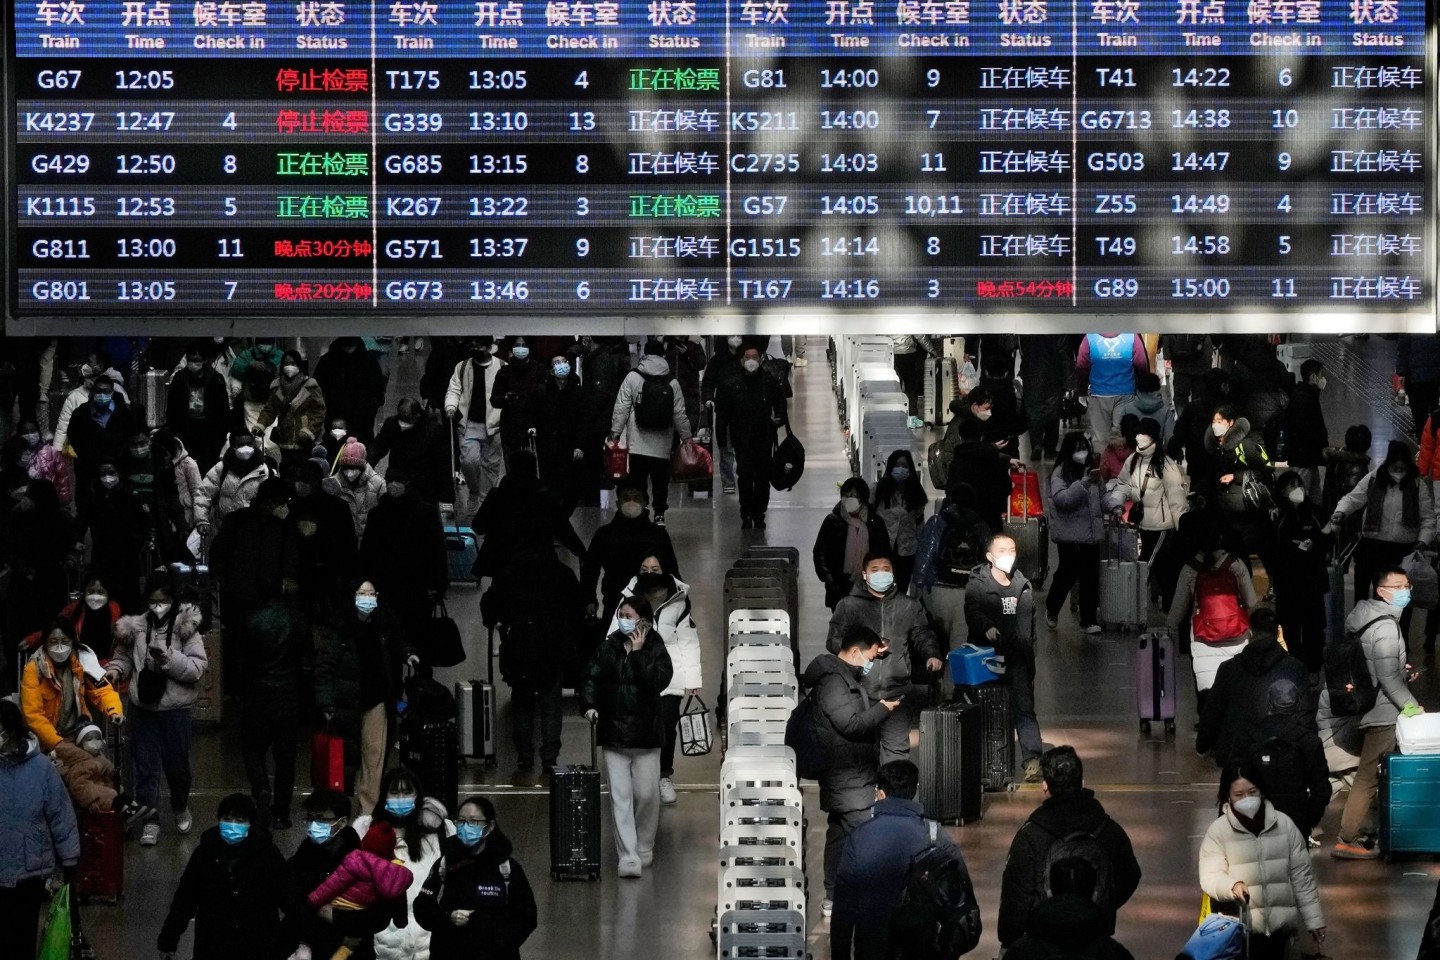 Reisende mit ihrem Gepäck gehen unter einer Zugabfahrtstafel am Westbahnhof in Peking.